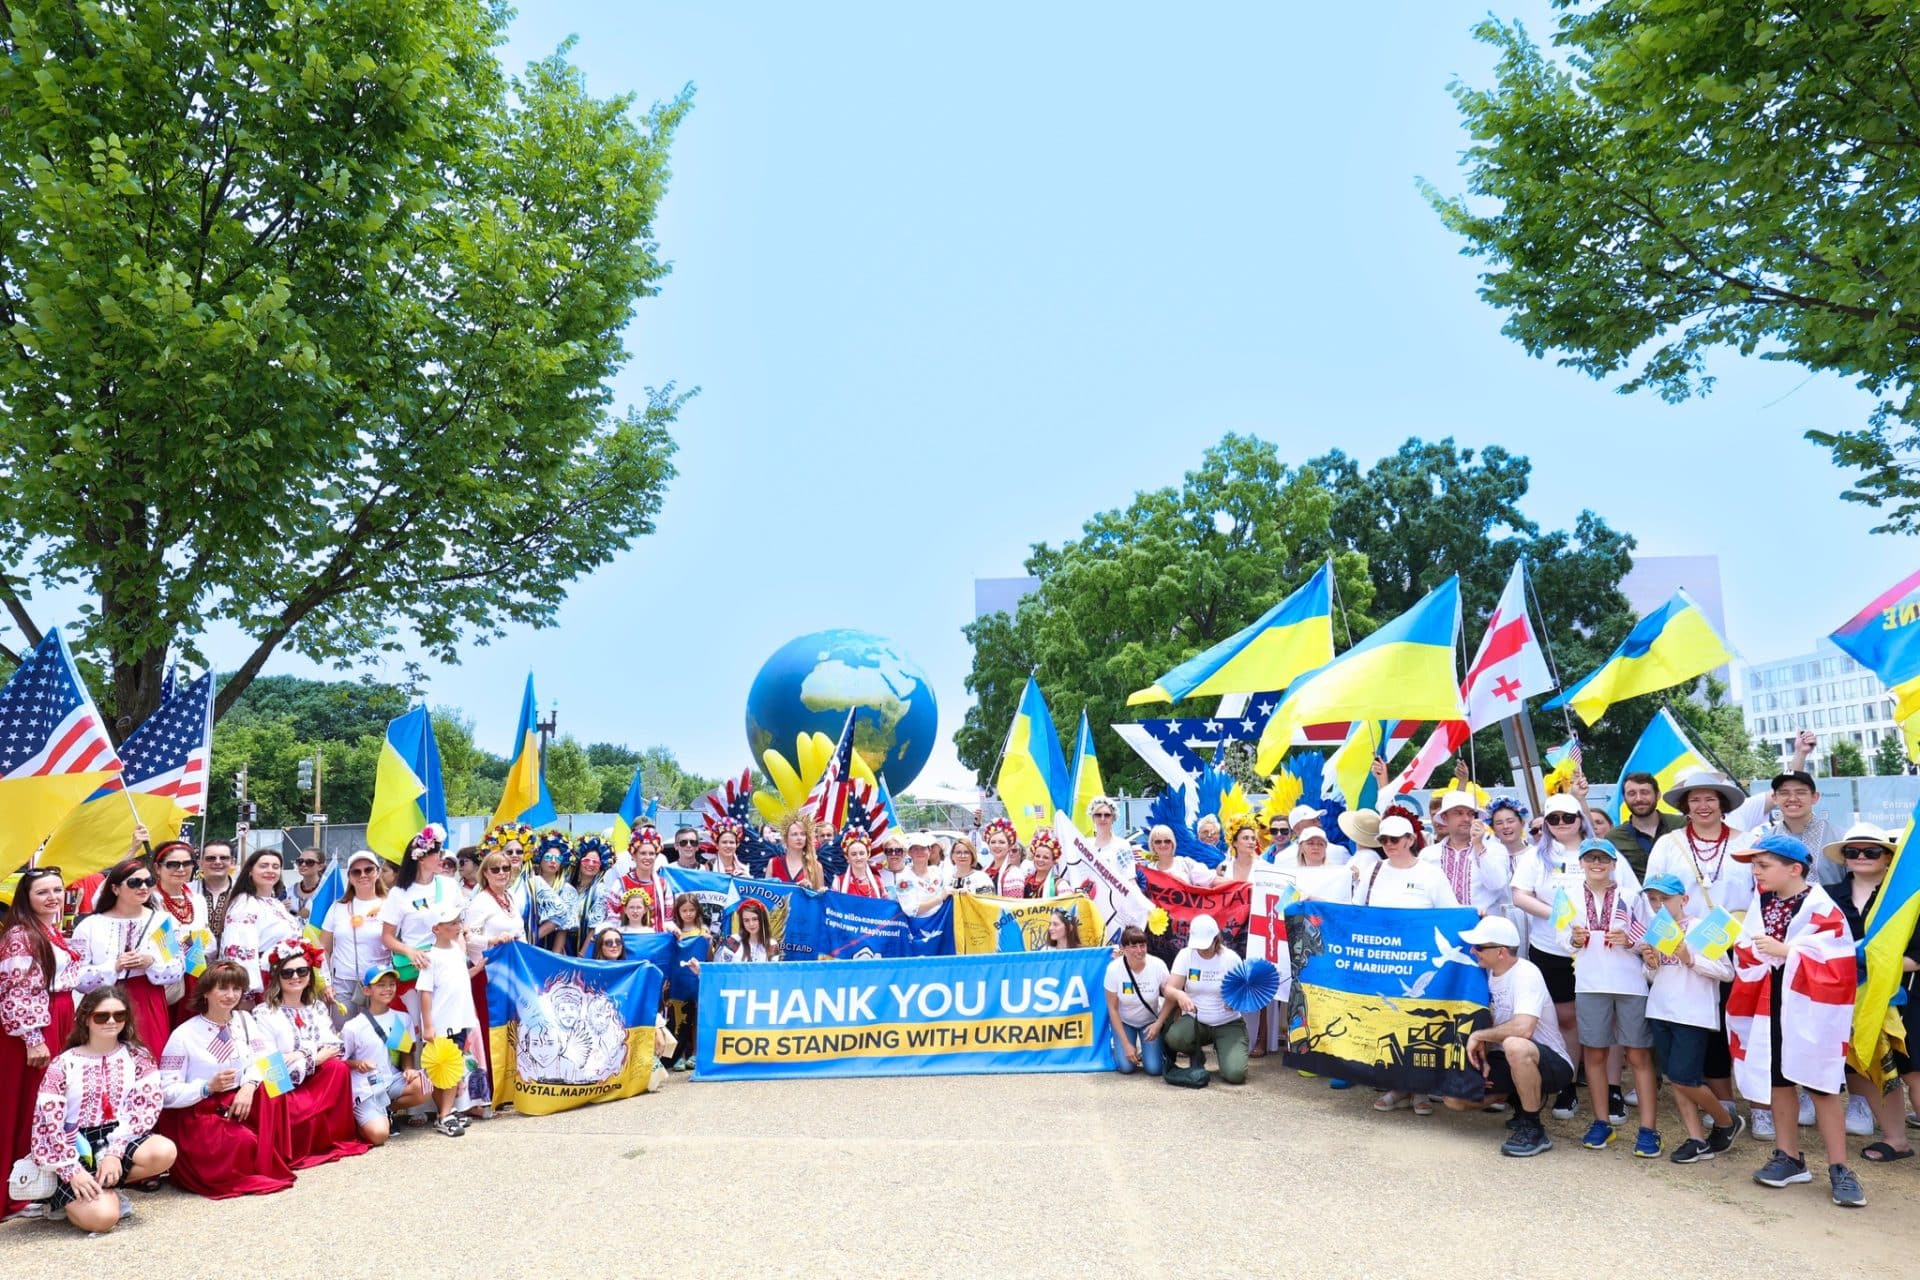 Washington DC Independence Day Parade with United Help Ukraine!